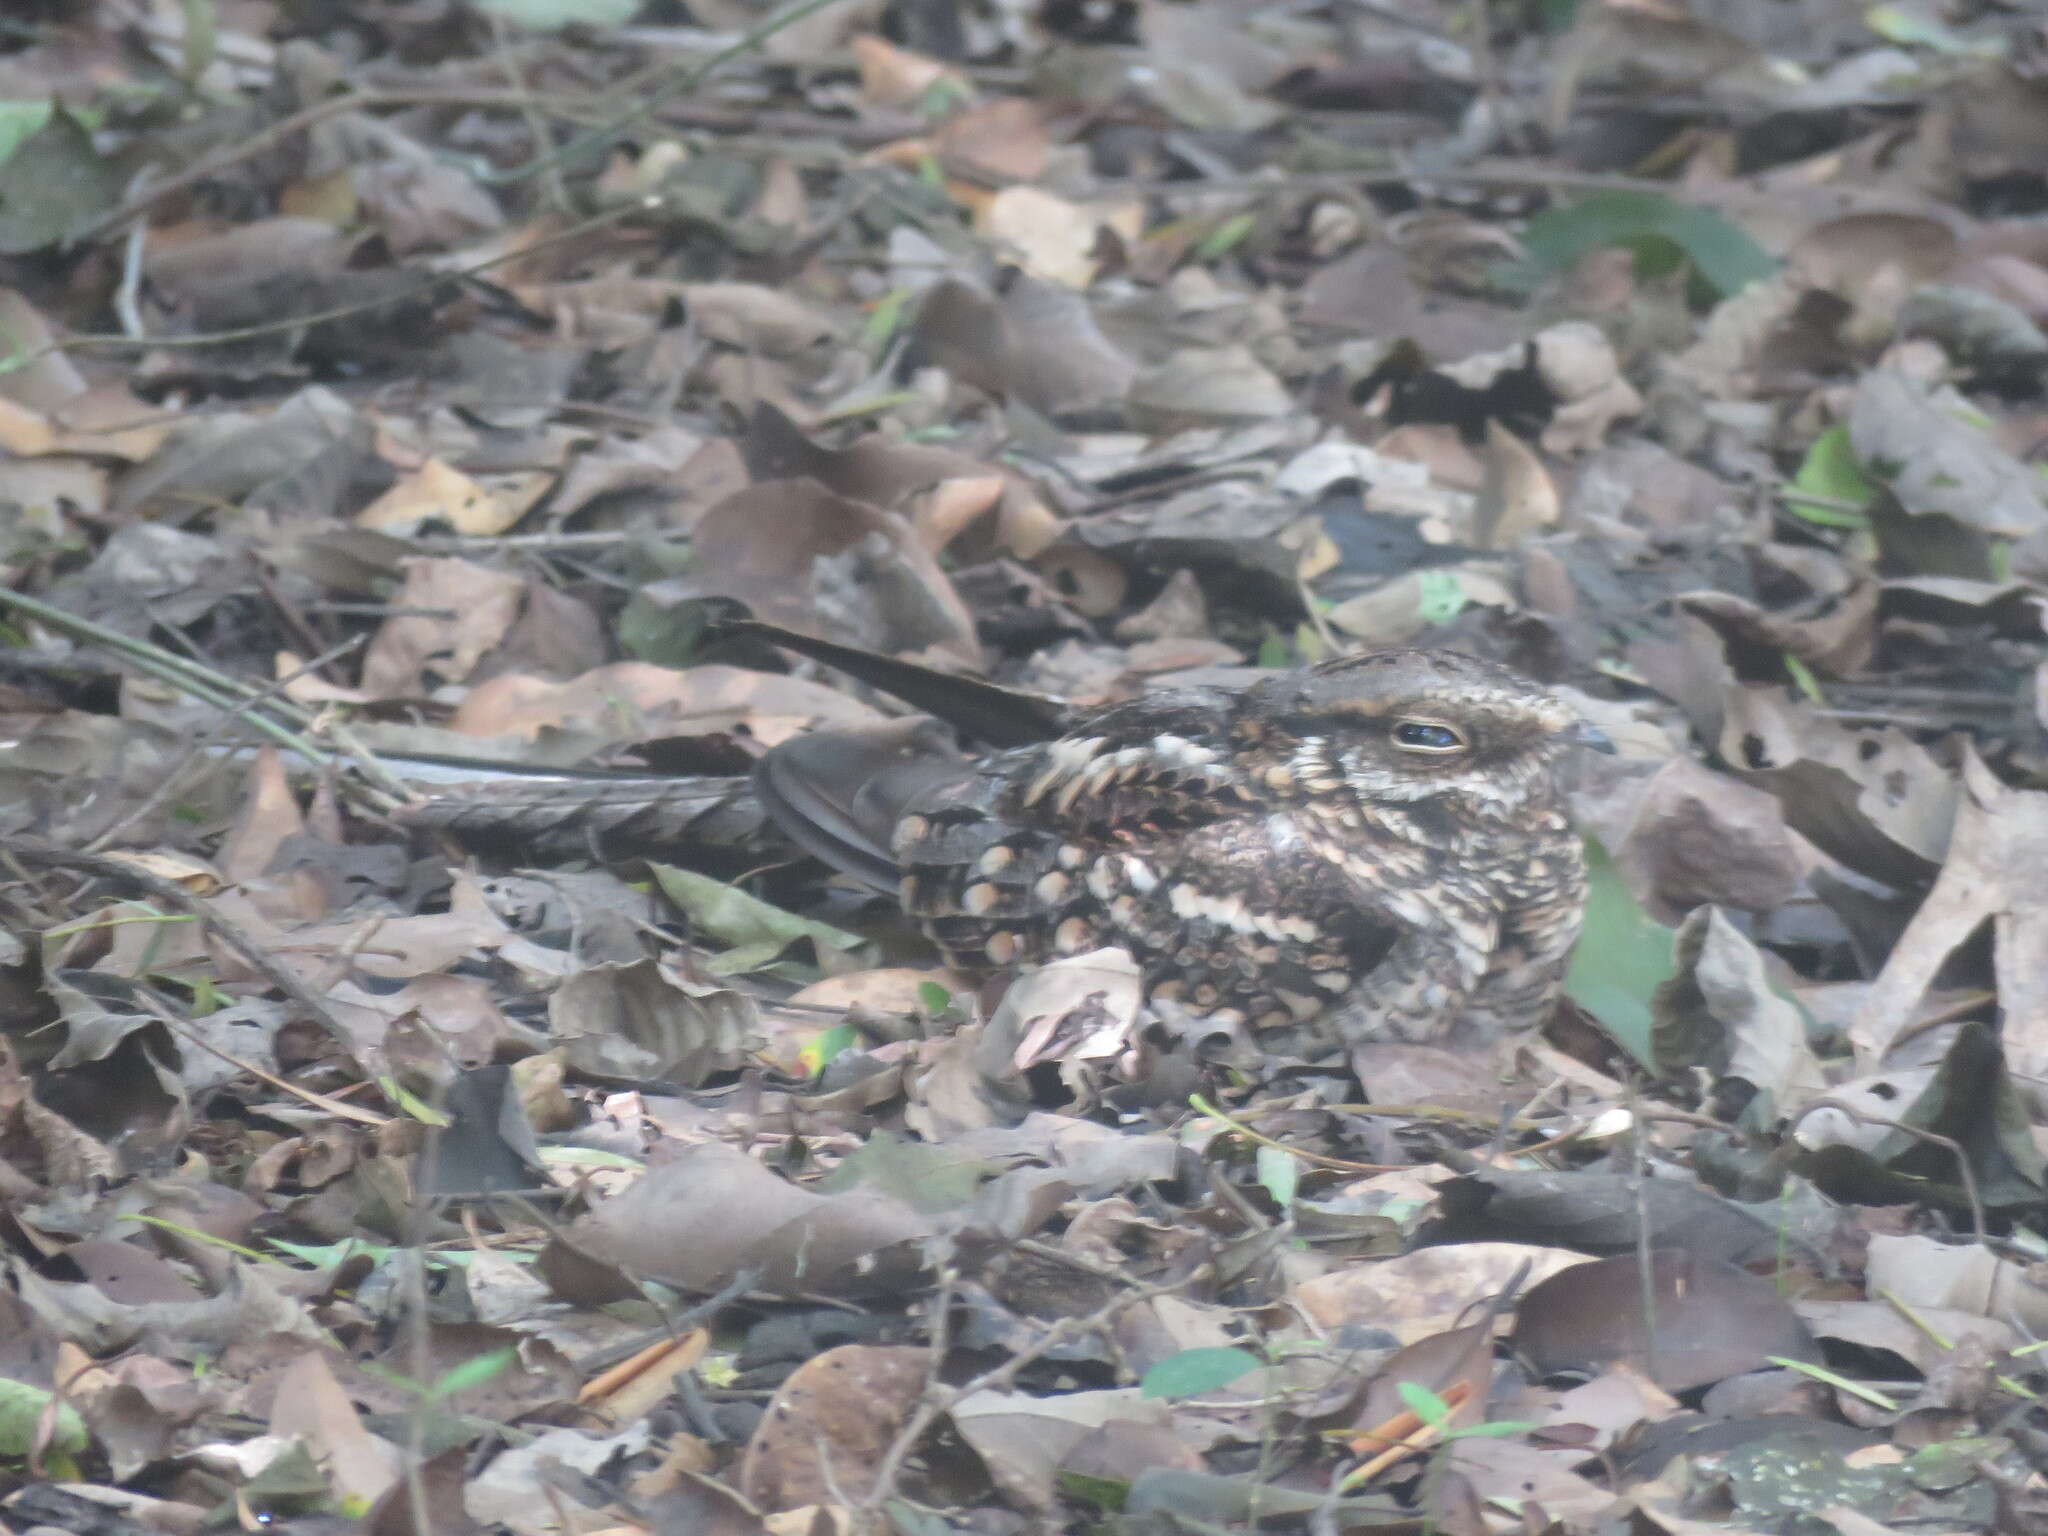 Image of Scissor-tailed Nightjar